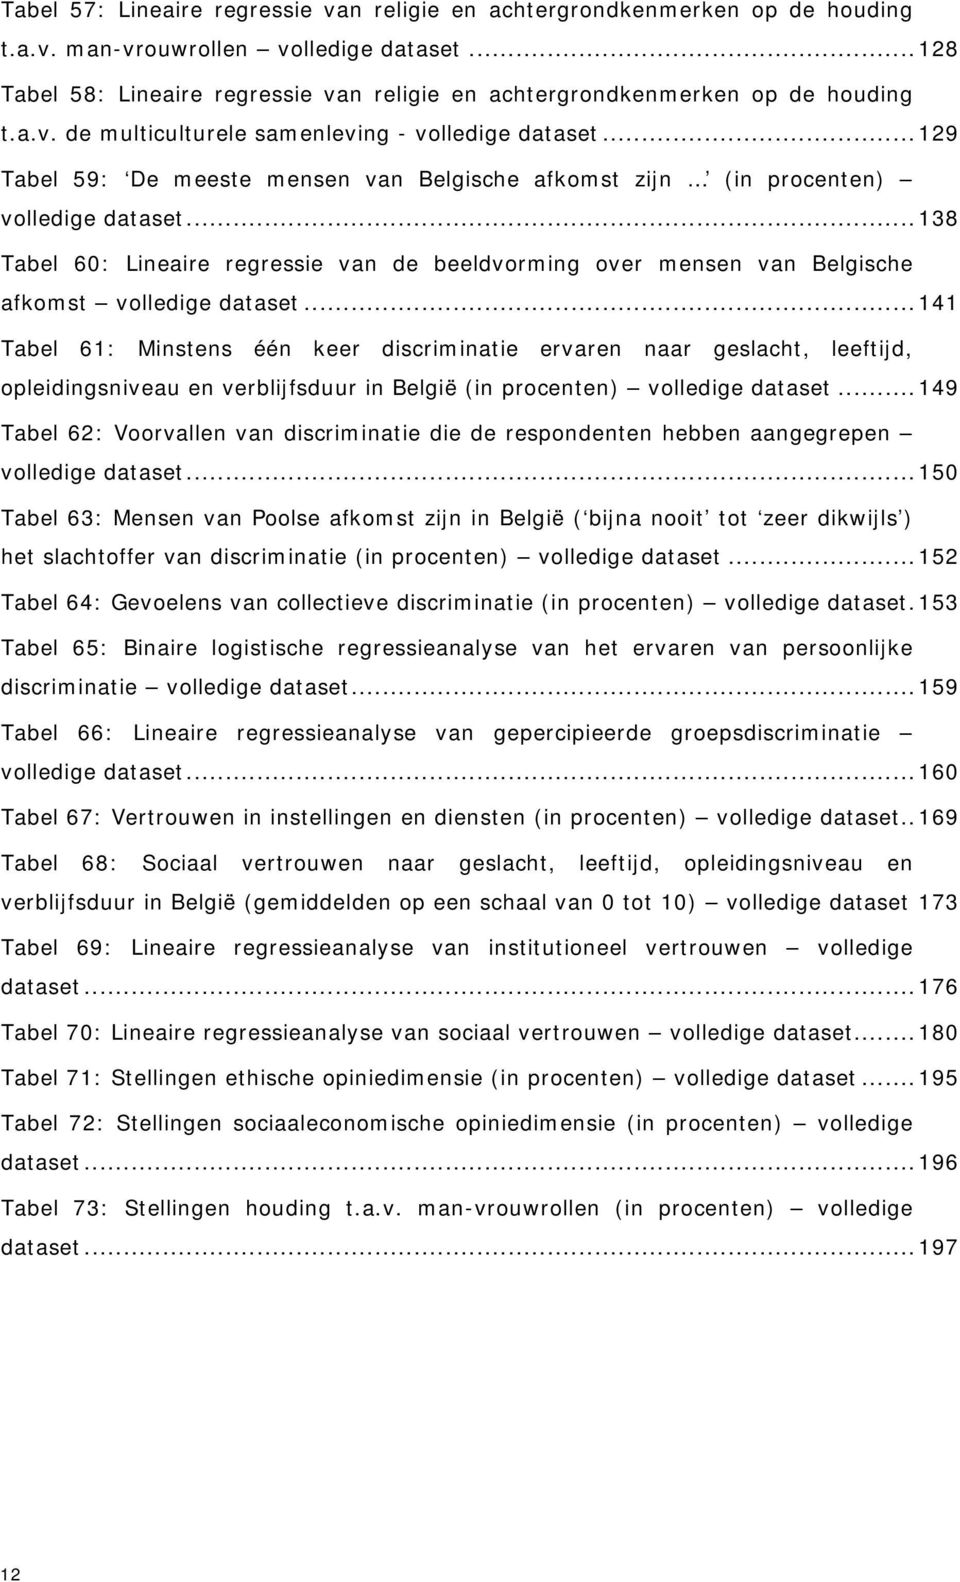 .. 129 Tabel 59: De meeste mensen van Belgische afkomst zijn (in procenten) volledige dataset... 138 Tabel 60: Lineaire regressie van de beeldvorming over mensen van Belgische afkomst volledige dataset.